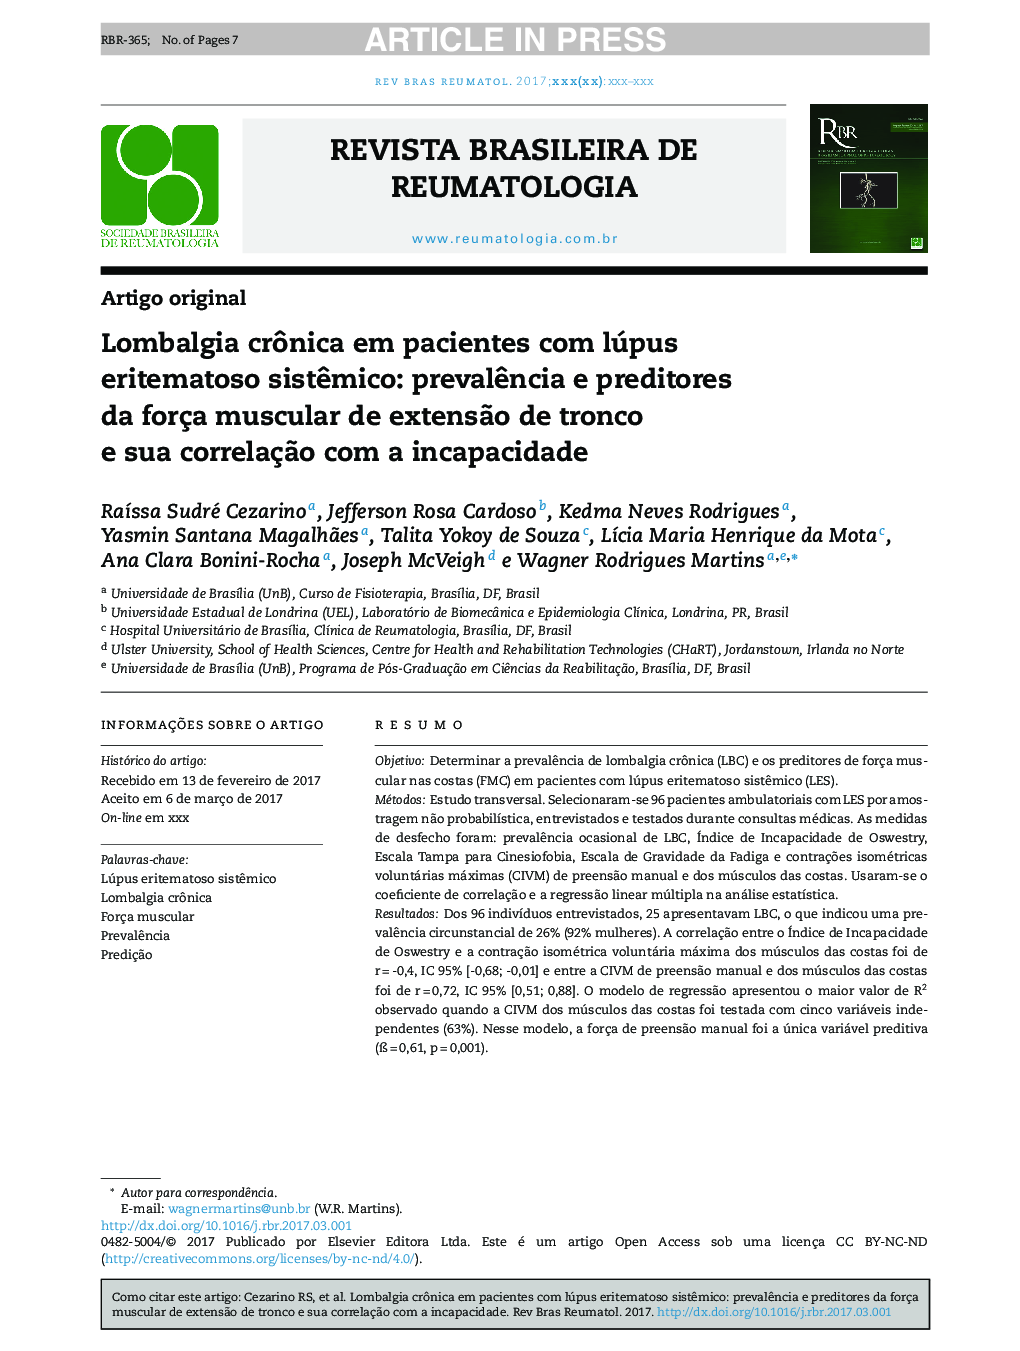 Lombalgia crÃ´nica em pacientes com lúpus eritematoso sistÃªmico: prevalÃªncia e preditores da força muscular de extensÃ£o de tronco e sua correlaçÃ£o com a incapacidade